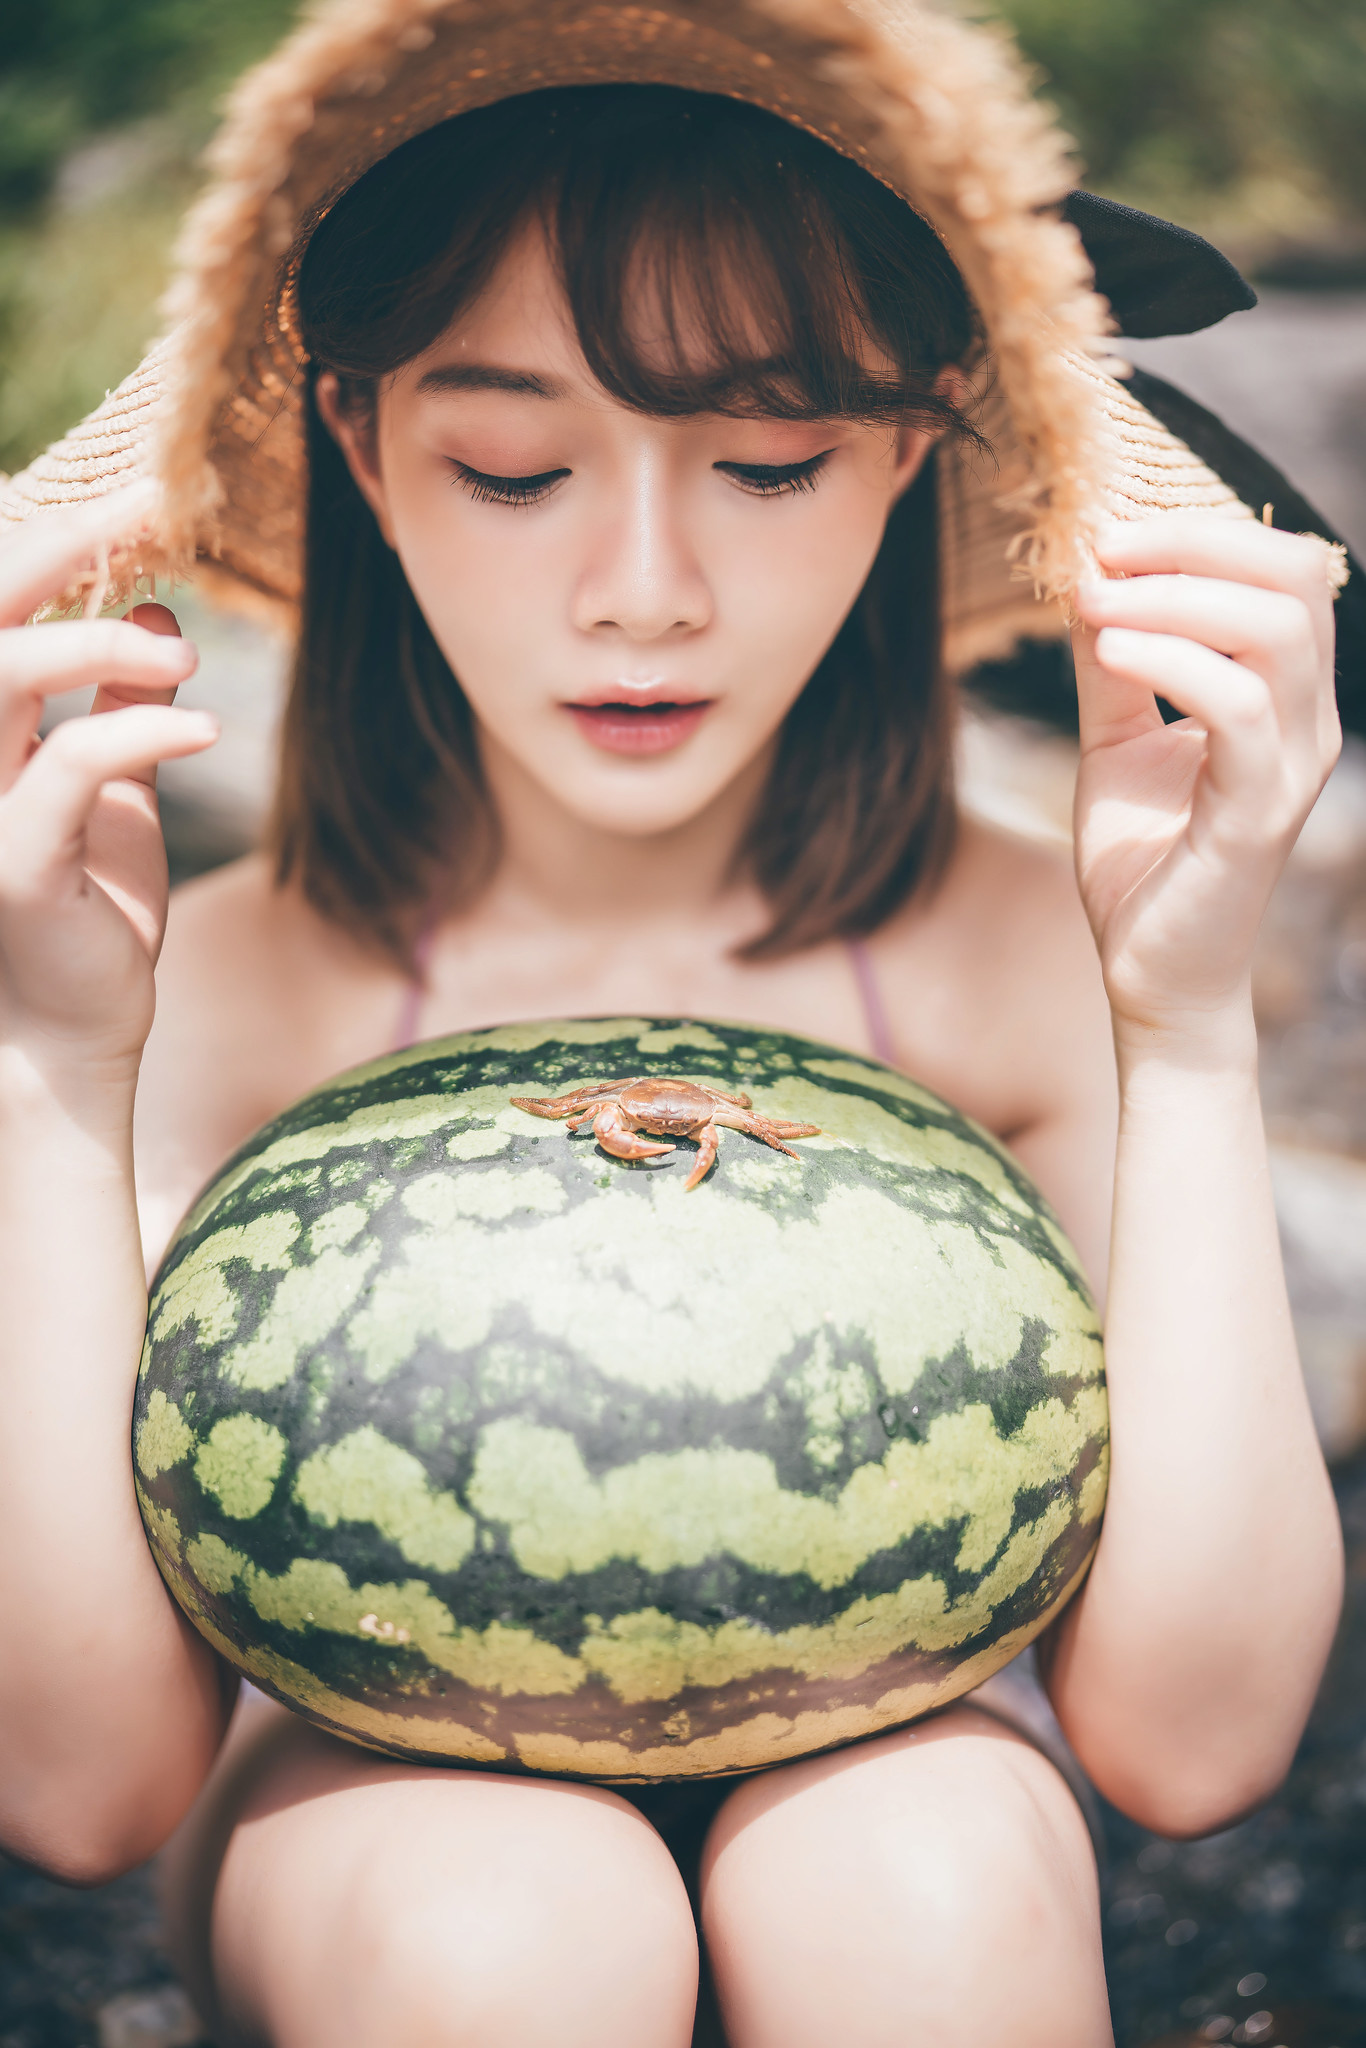 Asian Women Model Food Fruit Watermelons Animals Face Sitting Brunette Women Outdoors Crabs Sun Hats 1366x2048